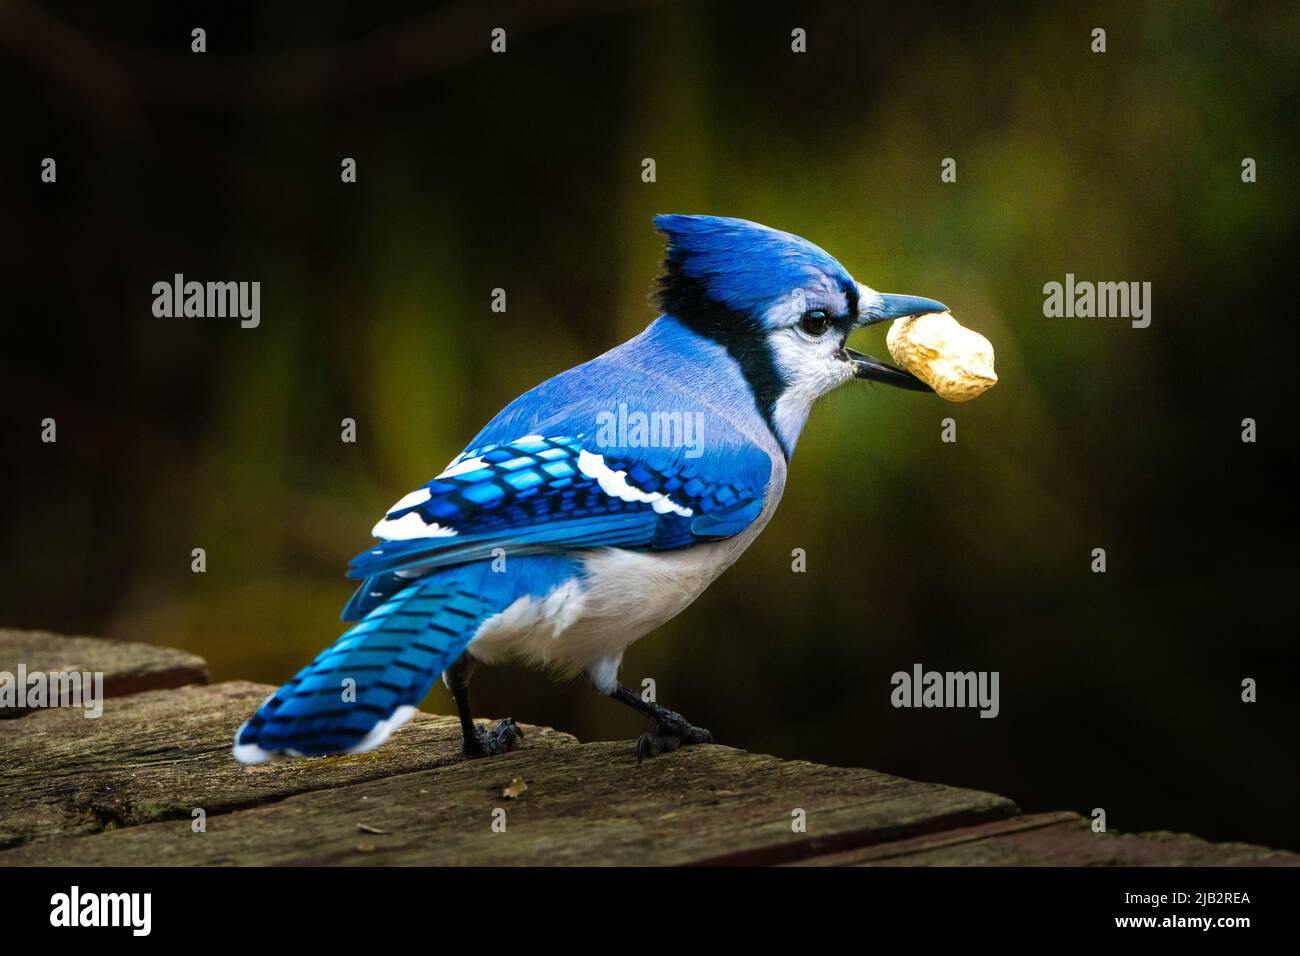 Blue Jay with Peanut Stock Photo